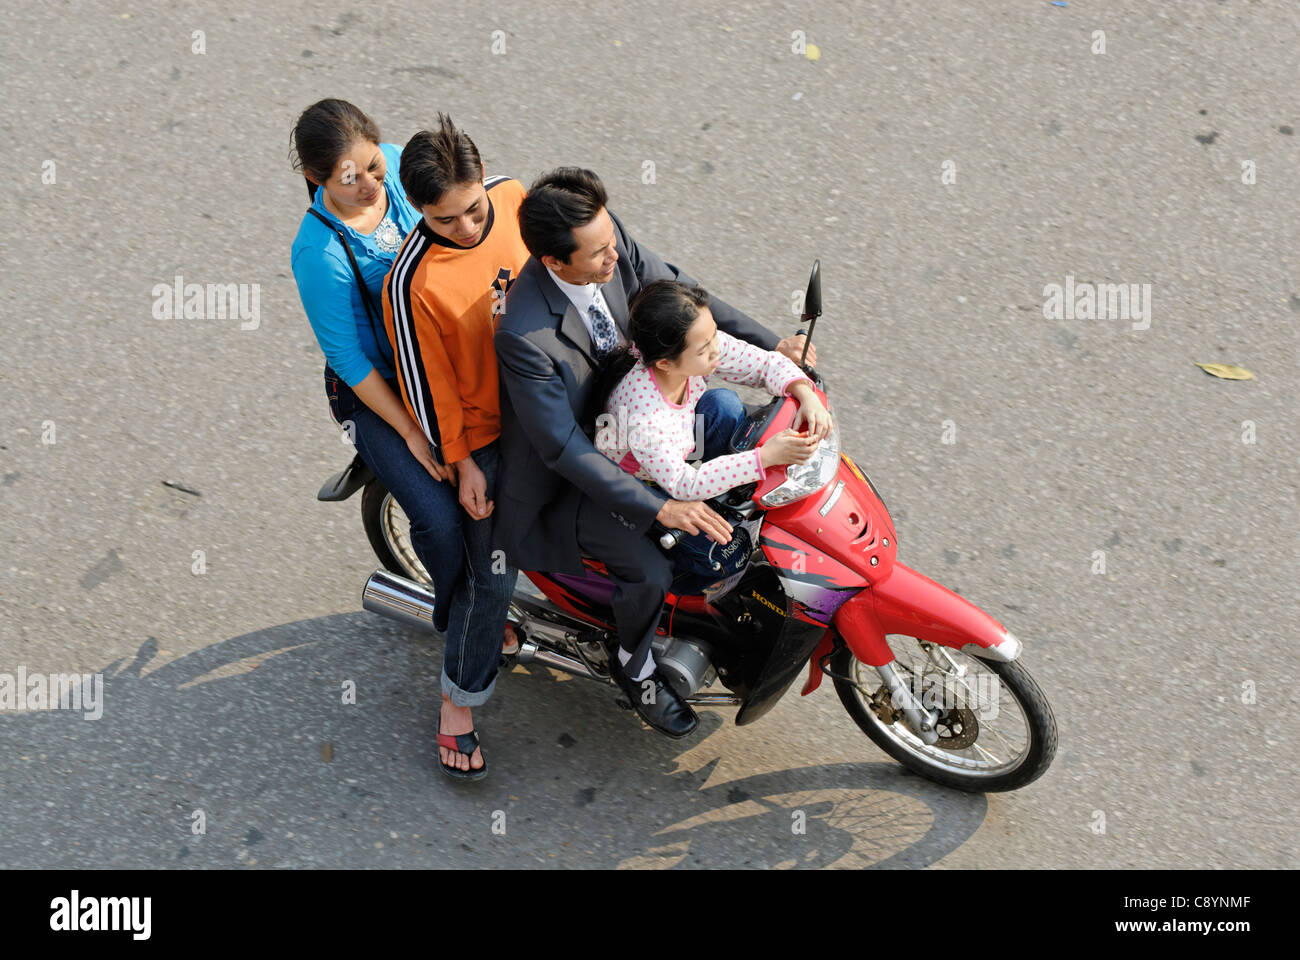 Asia, Vietnam, Hanoi. Hanoi old quarter. Vietnamese family of four riding on a motorbike through Hanoi.... Stock Photo